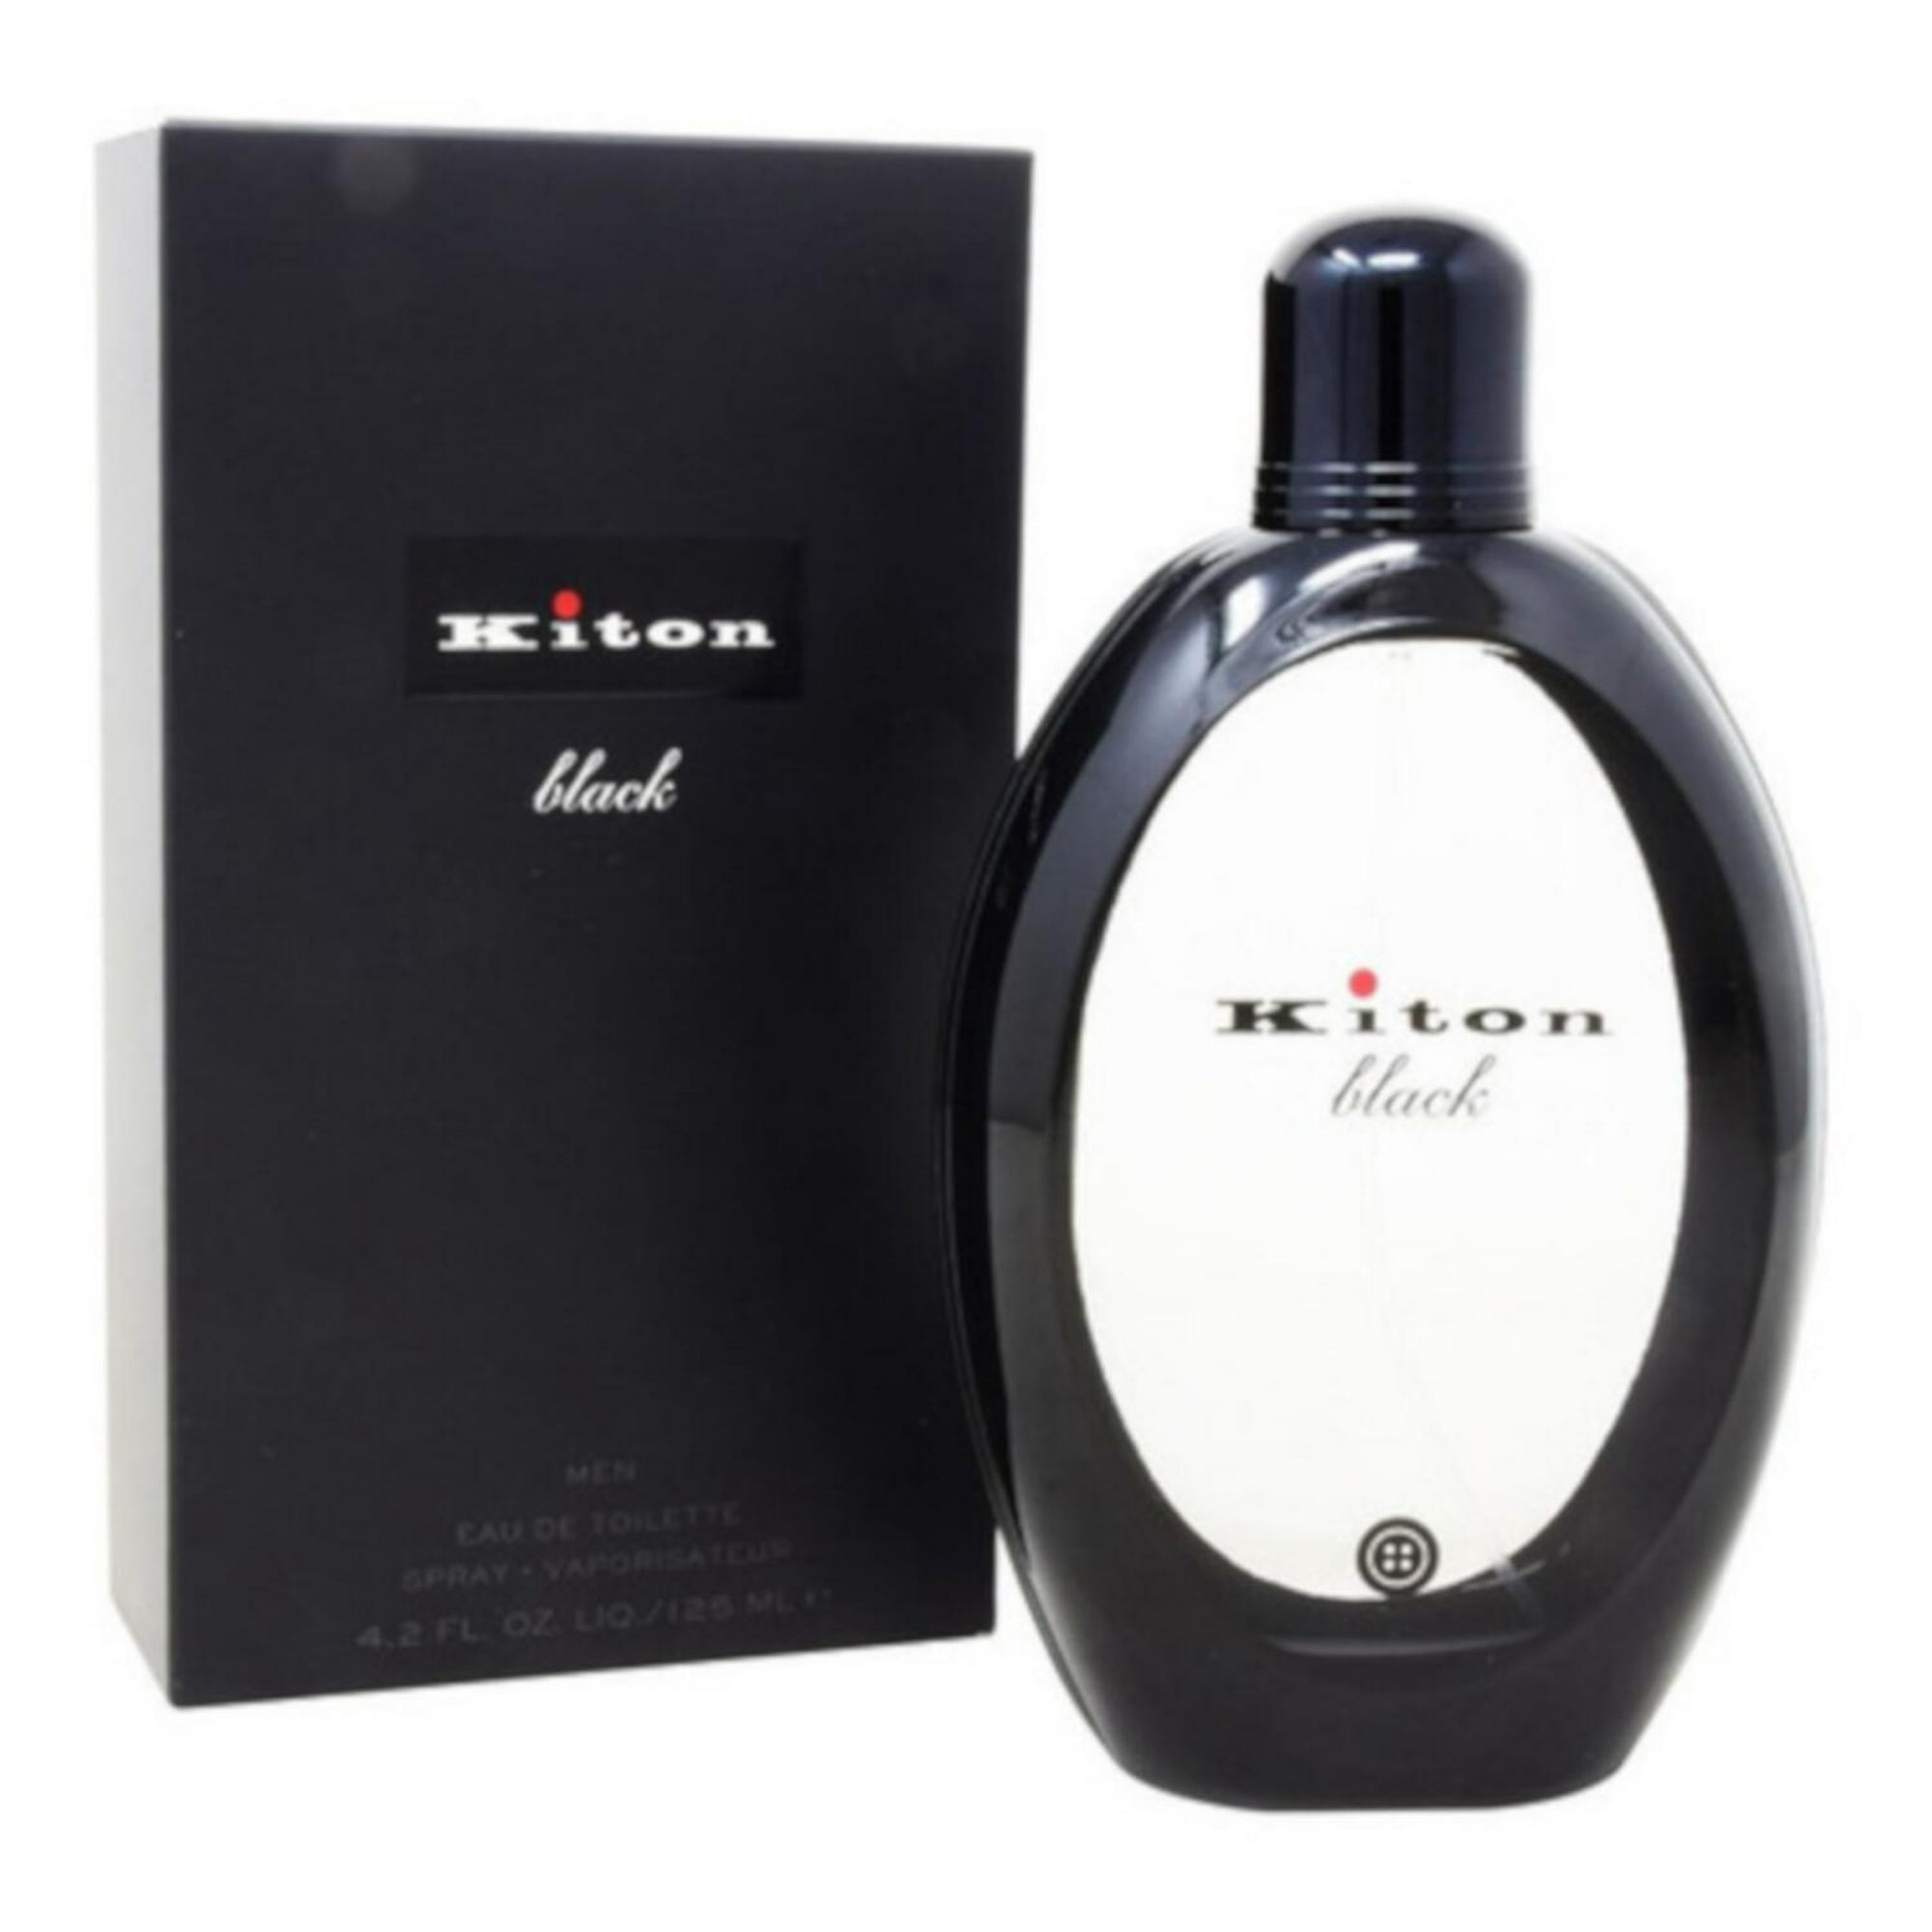 Loción Black de Kiton 125 ml EDT Kiton Black | Bodega Aurrera en línea